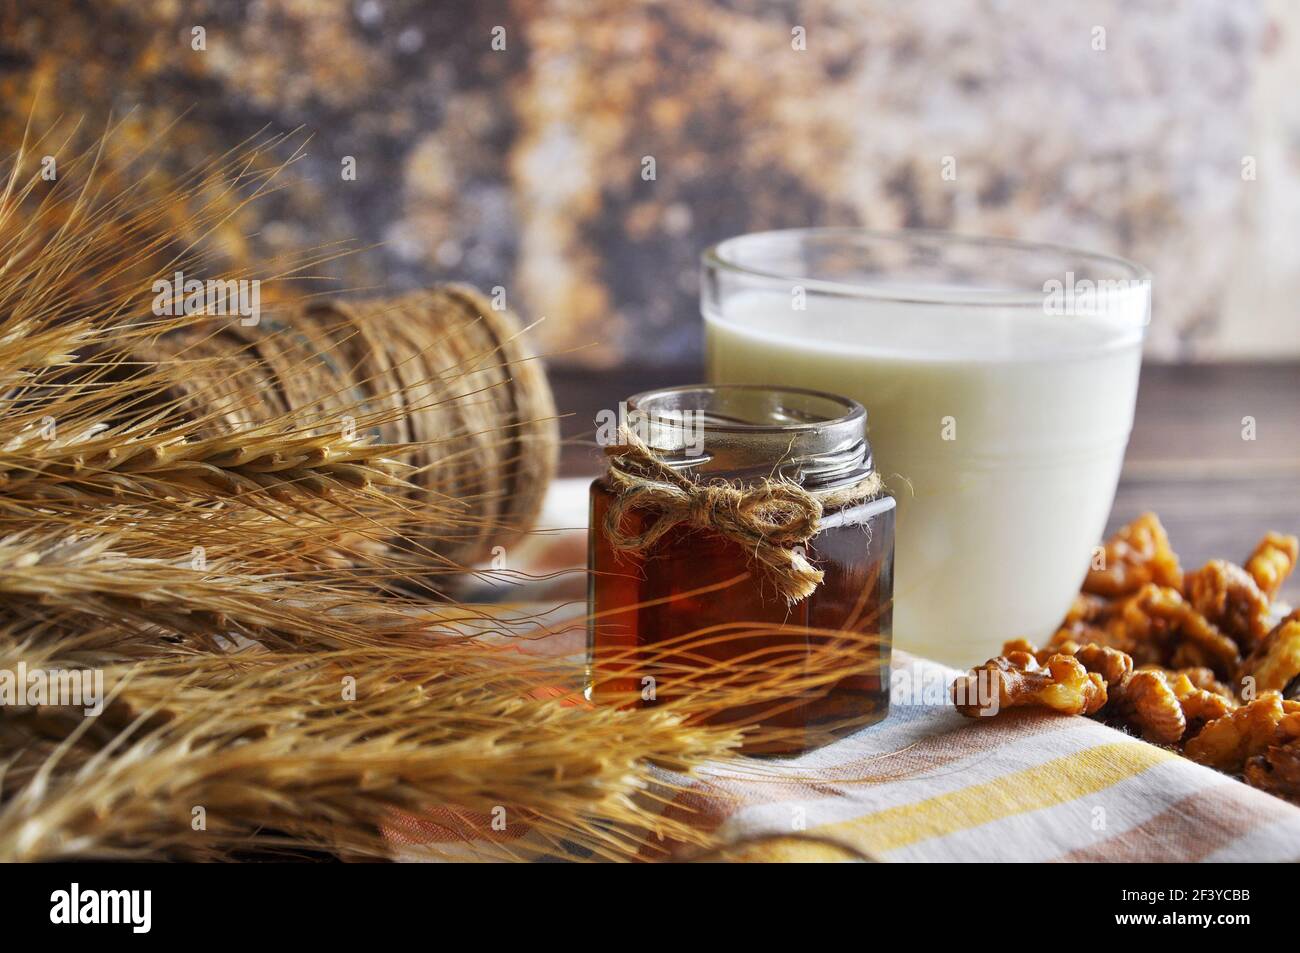 Offenes Glas mit flüssigem Honig, Milch, Nüssen, Weizen auf dem Vintage Handtuch. Hintergrundlayout mit freiem Textbereich. Stockfoto